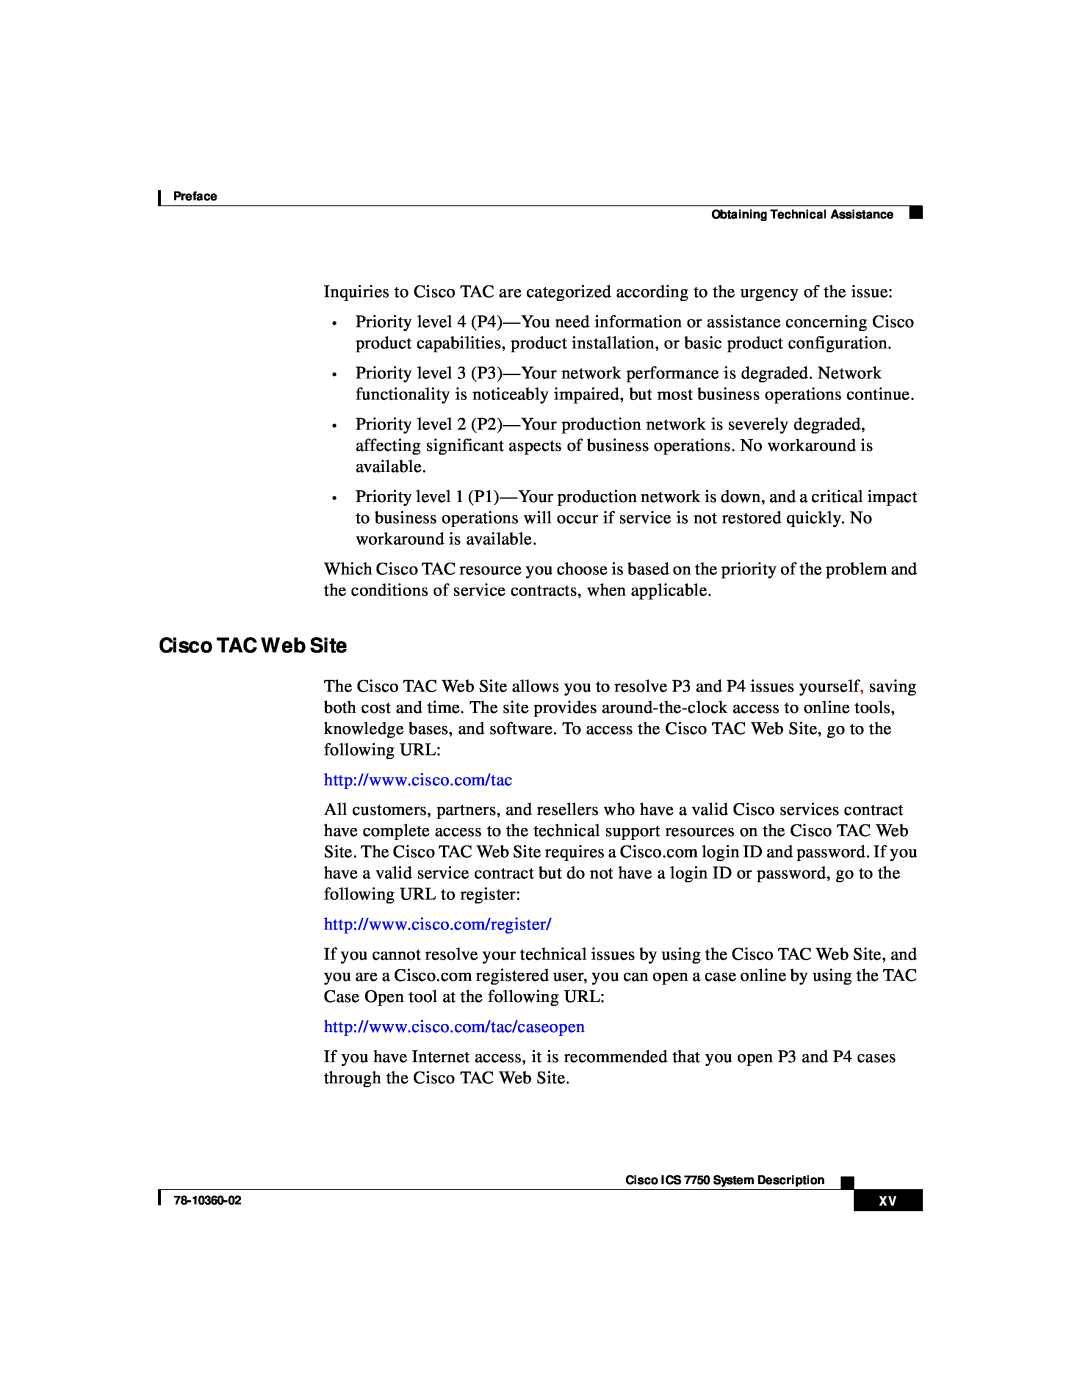 Cisco Systems ICS-7750 manual Cisco TAC Web Site 